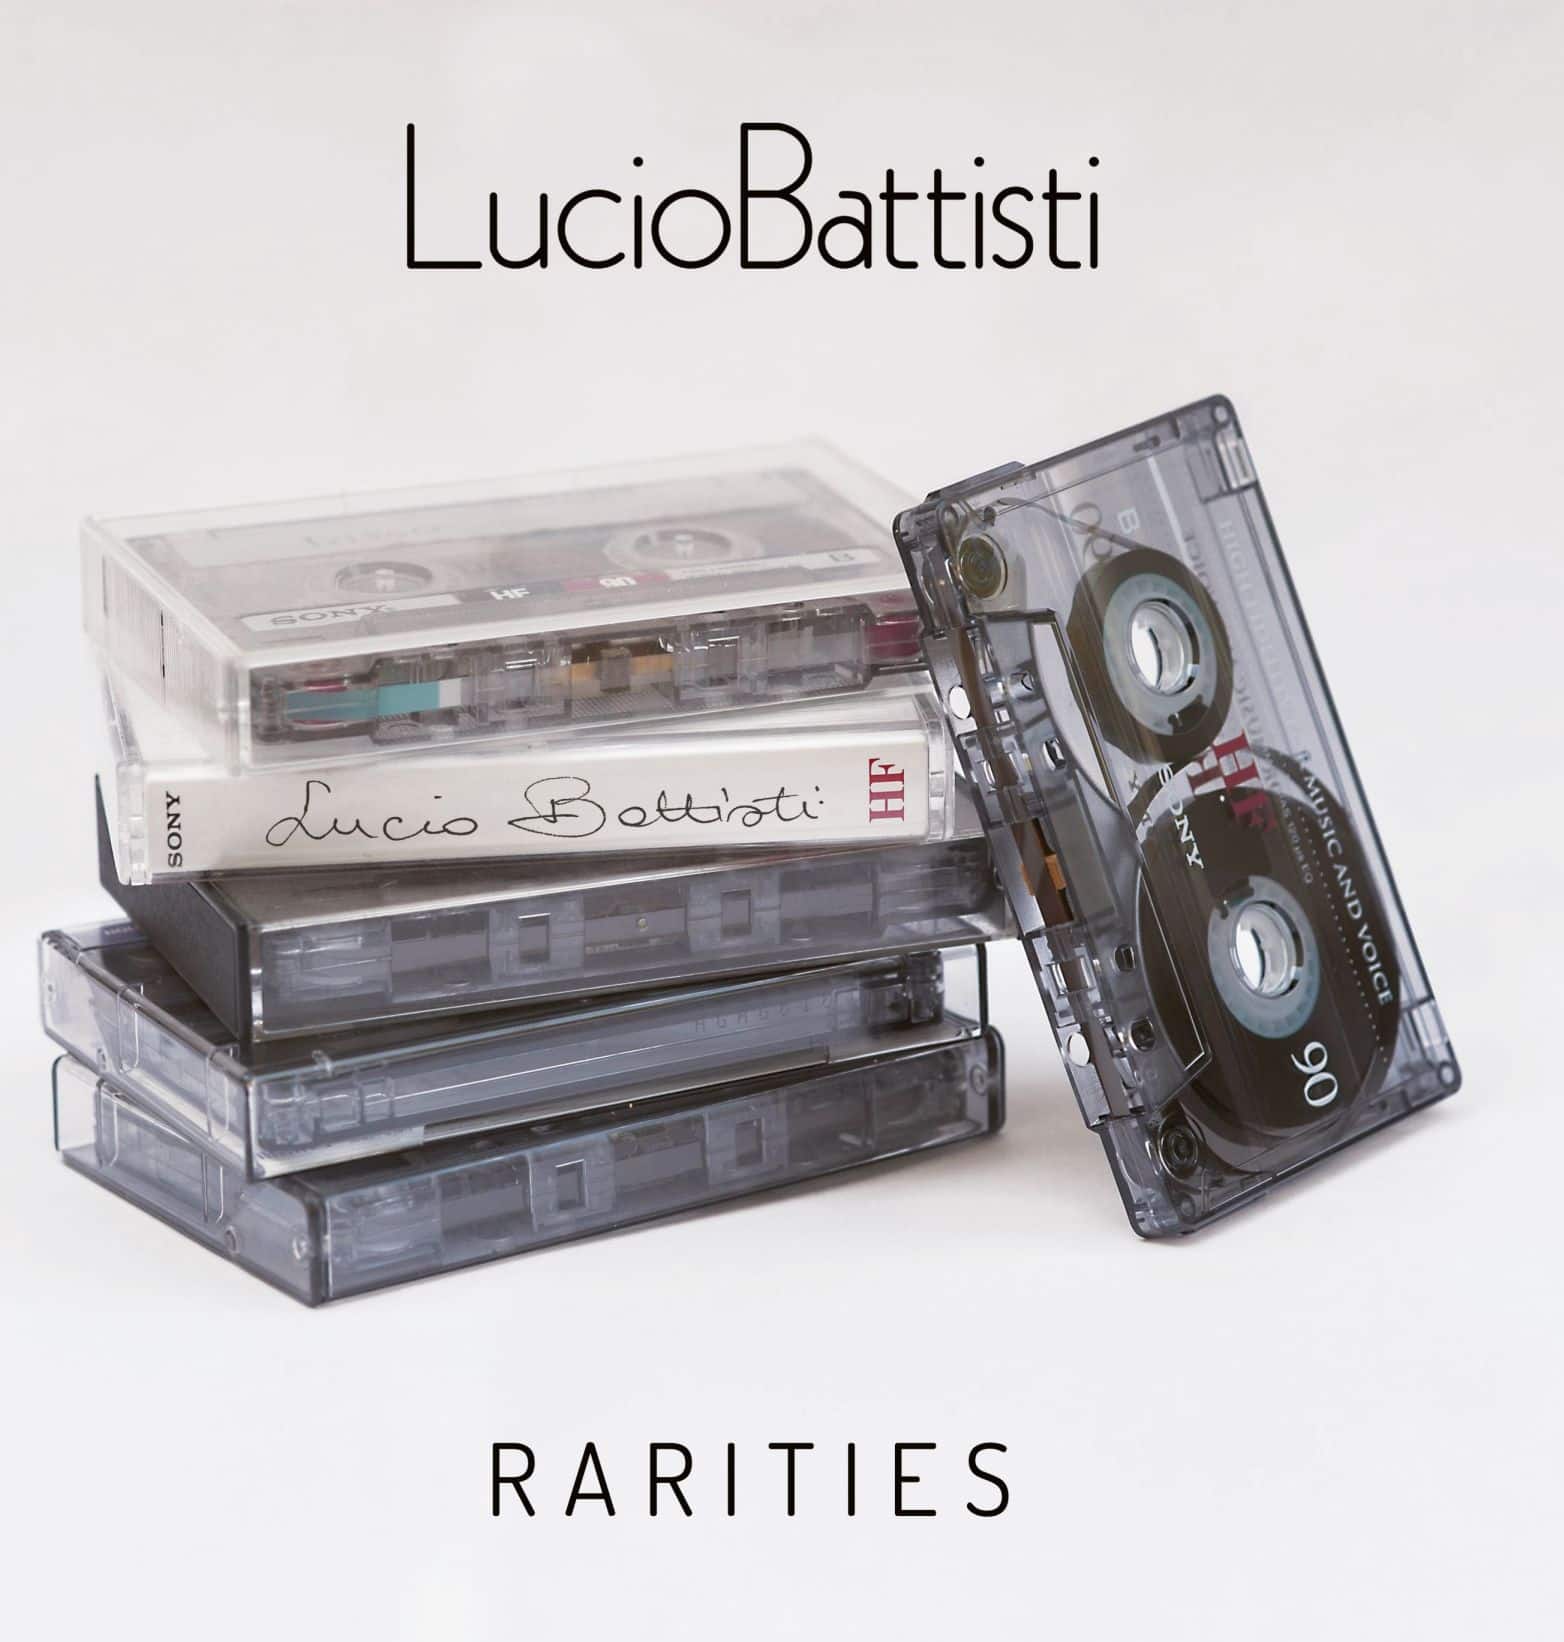 La copertina della nuova raccolta di Lucio Battisti